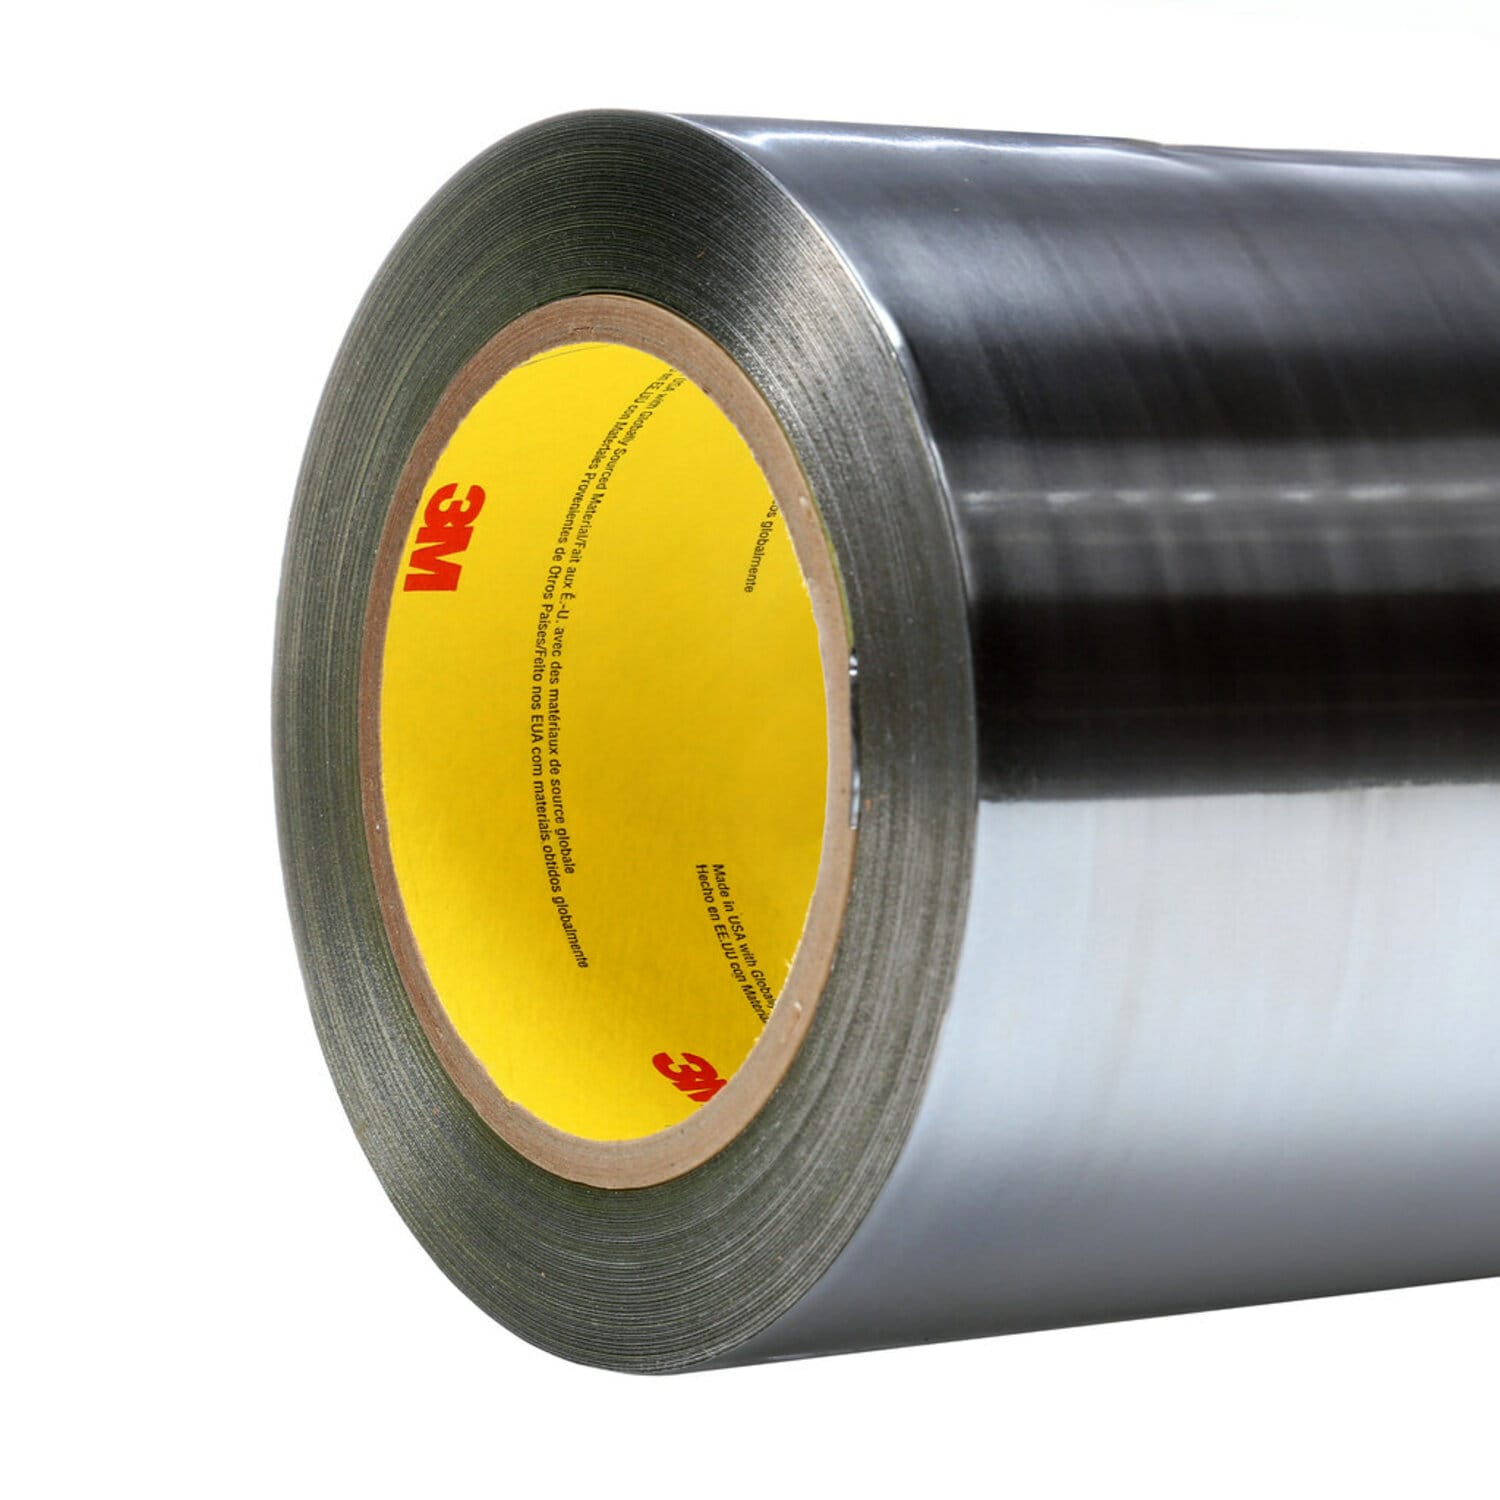 7100053749 - 3M Aluminum Foil Tape 425, Silver, 300 mm x 55 m, 4.6 mil, 1 roll per
case